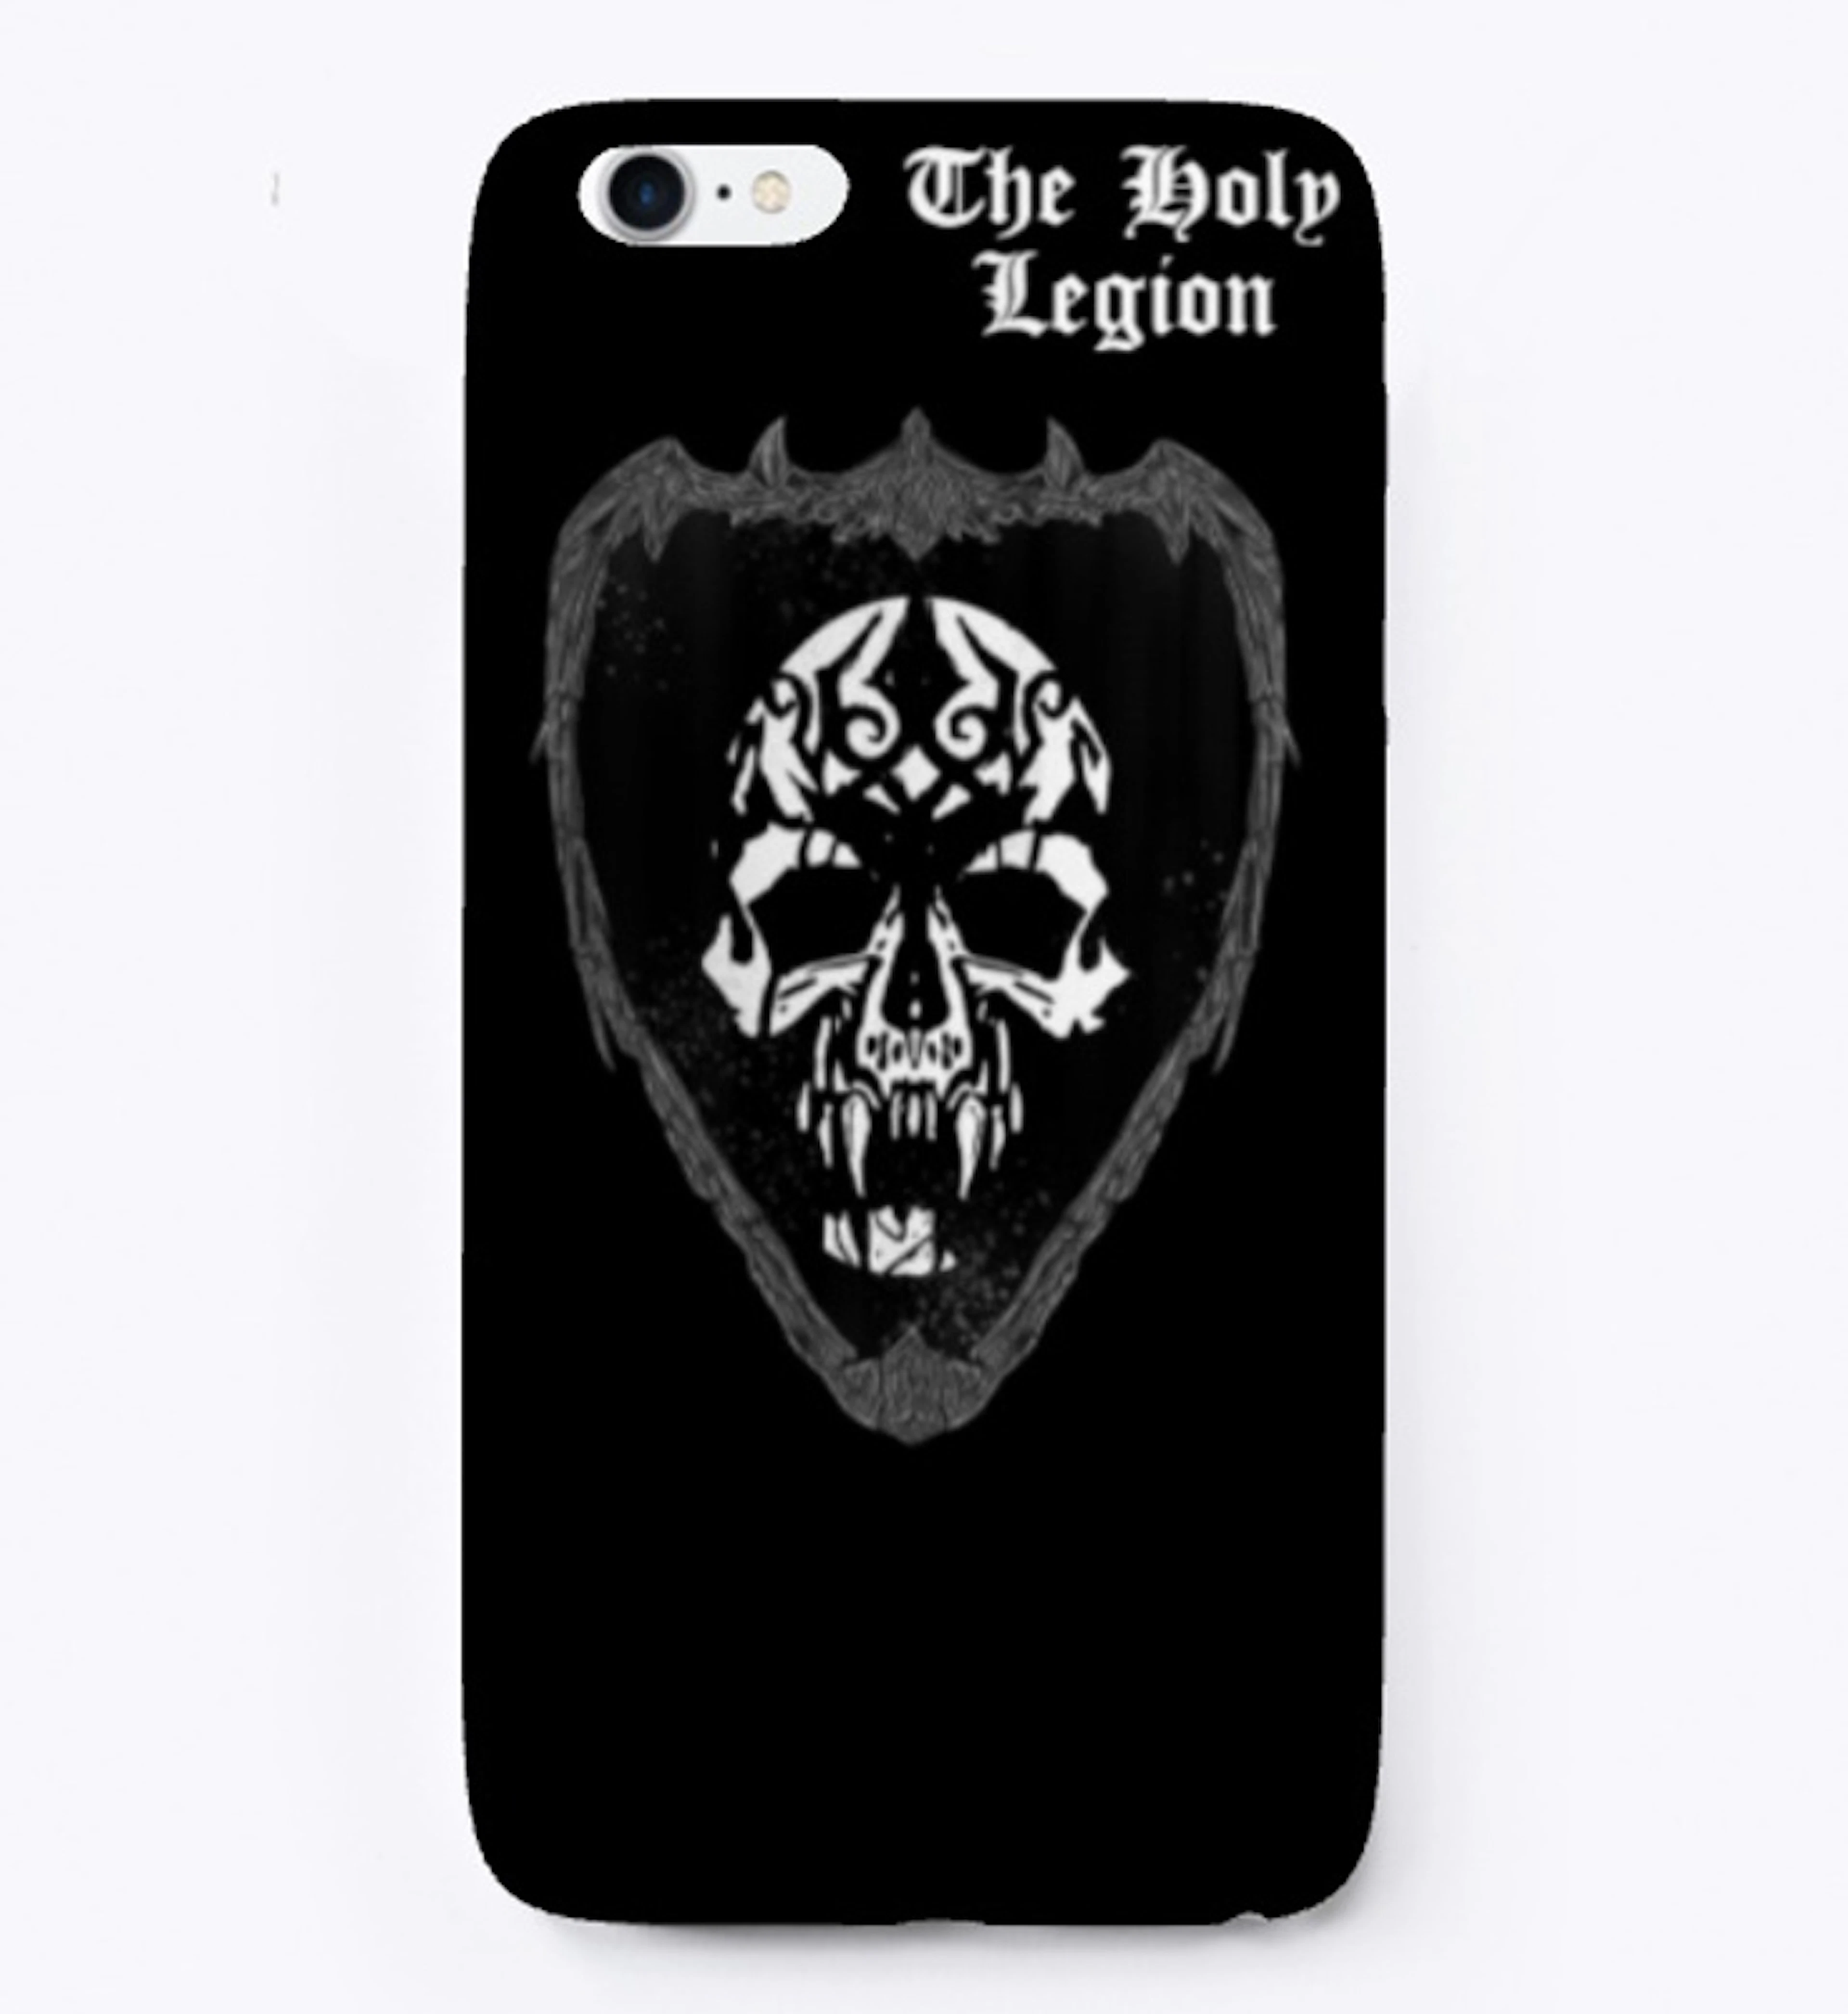 Holy Legion iPhone case